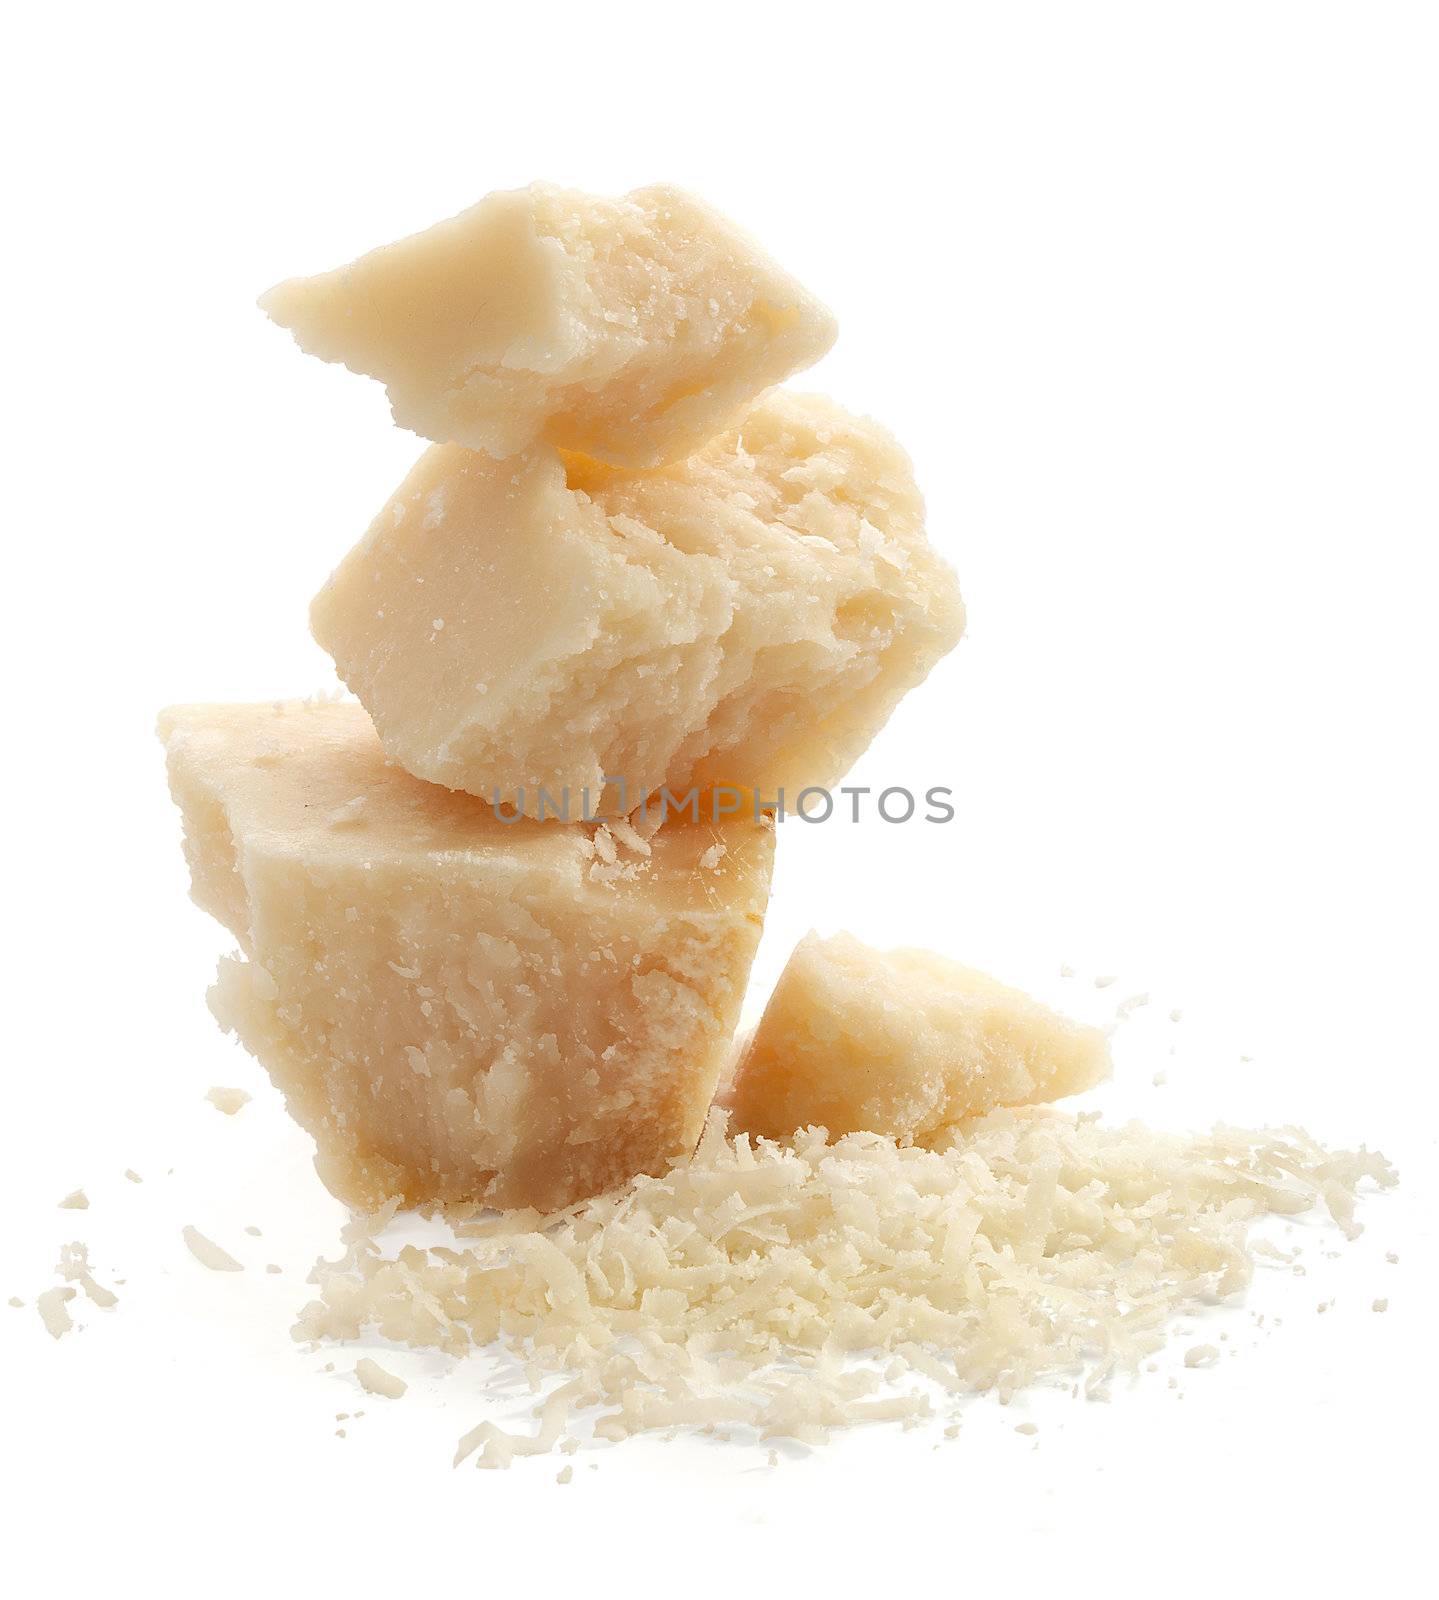 Hard cheese by Angorius